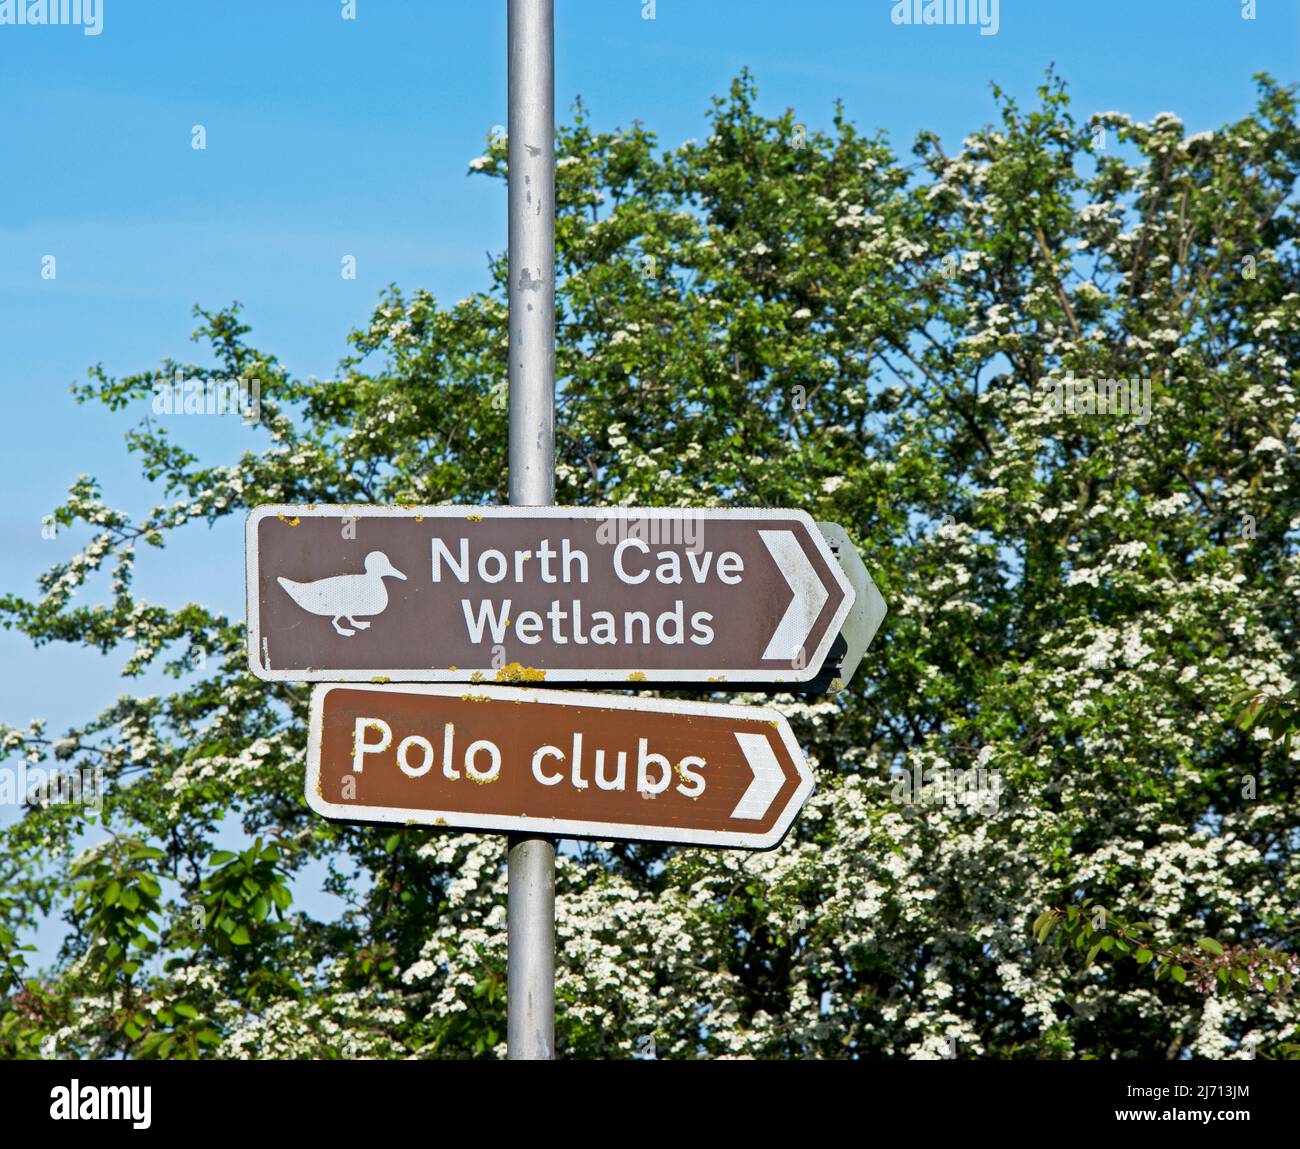 Inscrivez-vous à North Cave pour les North Cave Wetlands et les Polo Clubs, East Yorkshire, Angleterre Banque D'Images